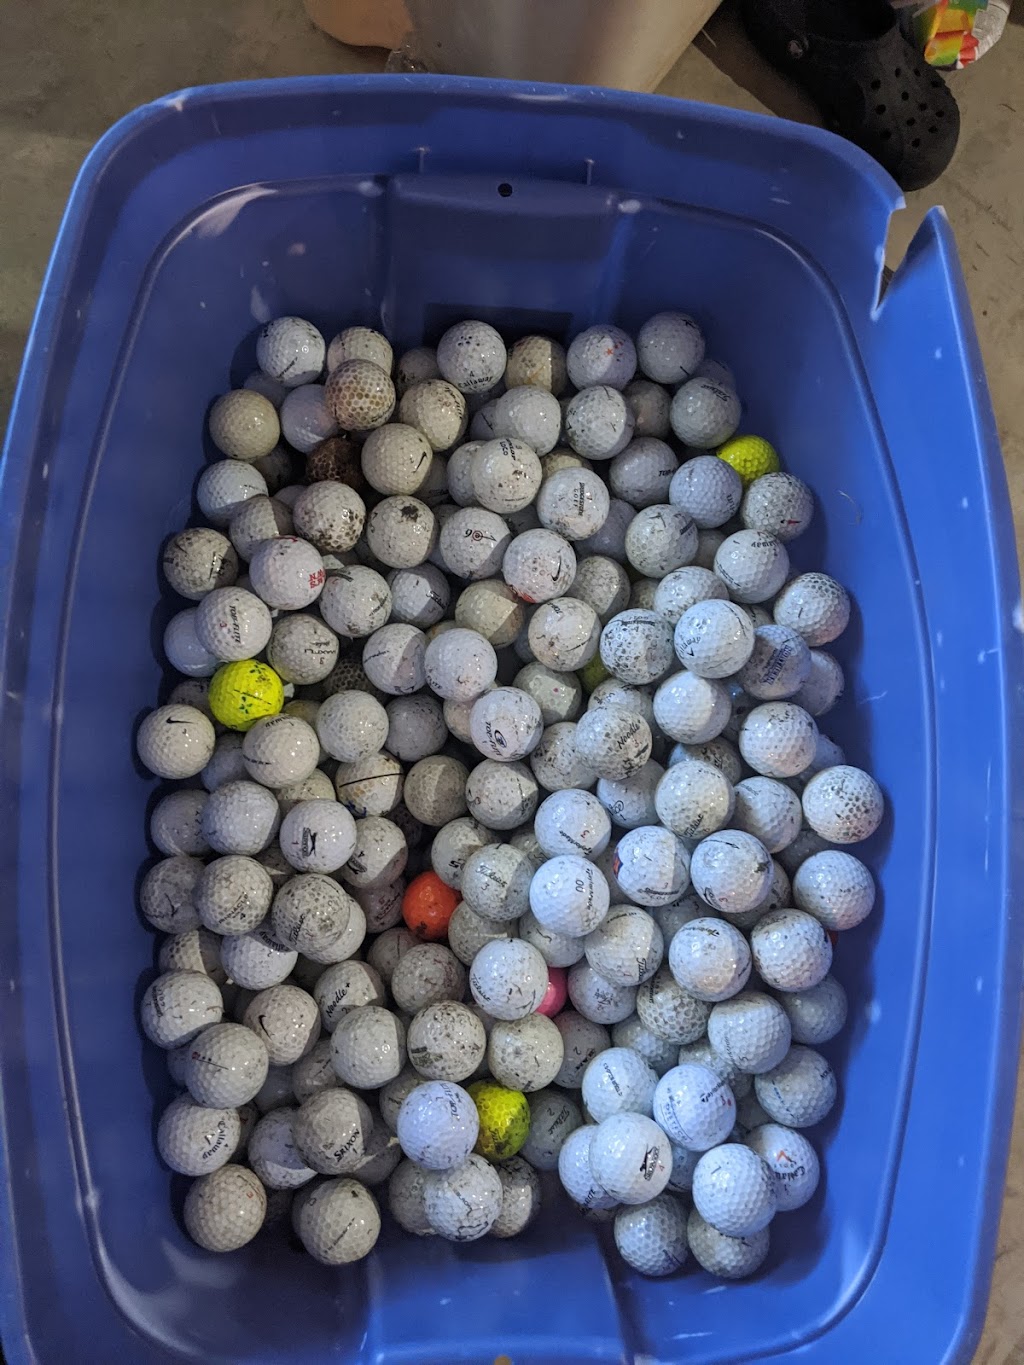 We got the balls used golf balls | 3190 Millbrook Cir, Stillwater, MN 55082, USA | Phone: (651) 300-8151